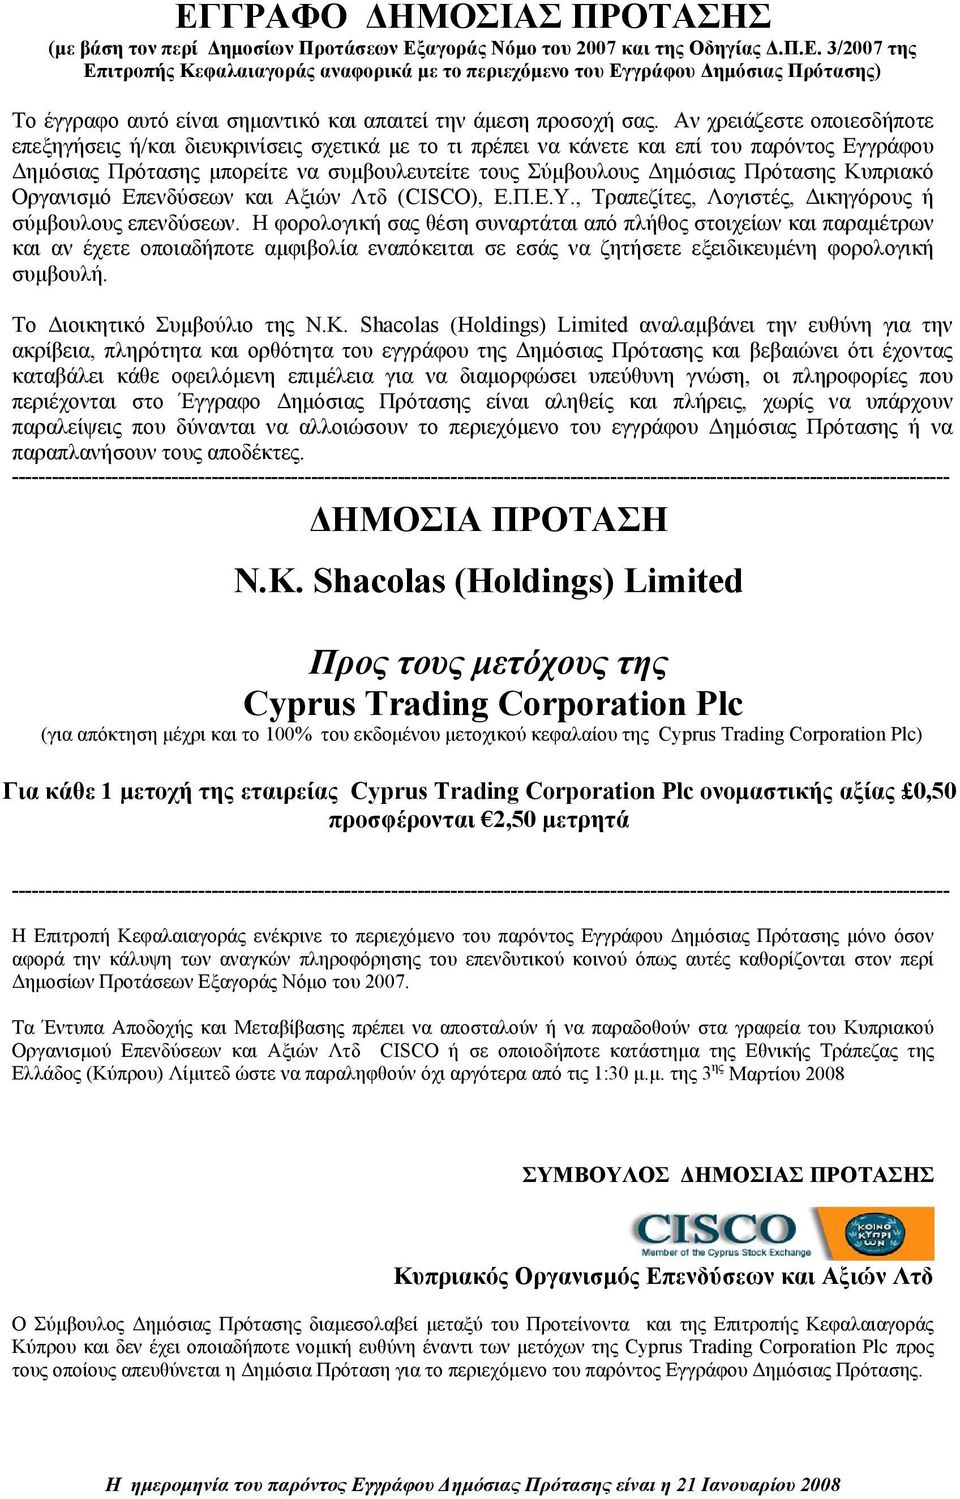 Κυπριακό Οργανισµό Επενδύσεων και Αξιών Λτδ (CISCO), Ε.Π.Ε.Υ., Τραπεζίτες, Λογιστές, ικηγόρους ή σύµβουλους επενδύσεων.